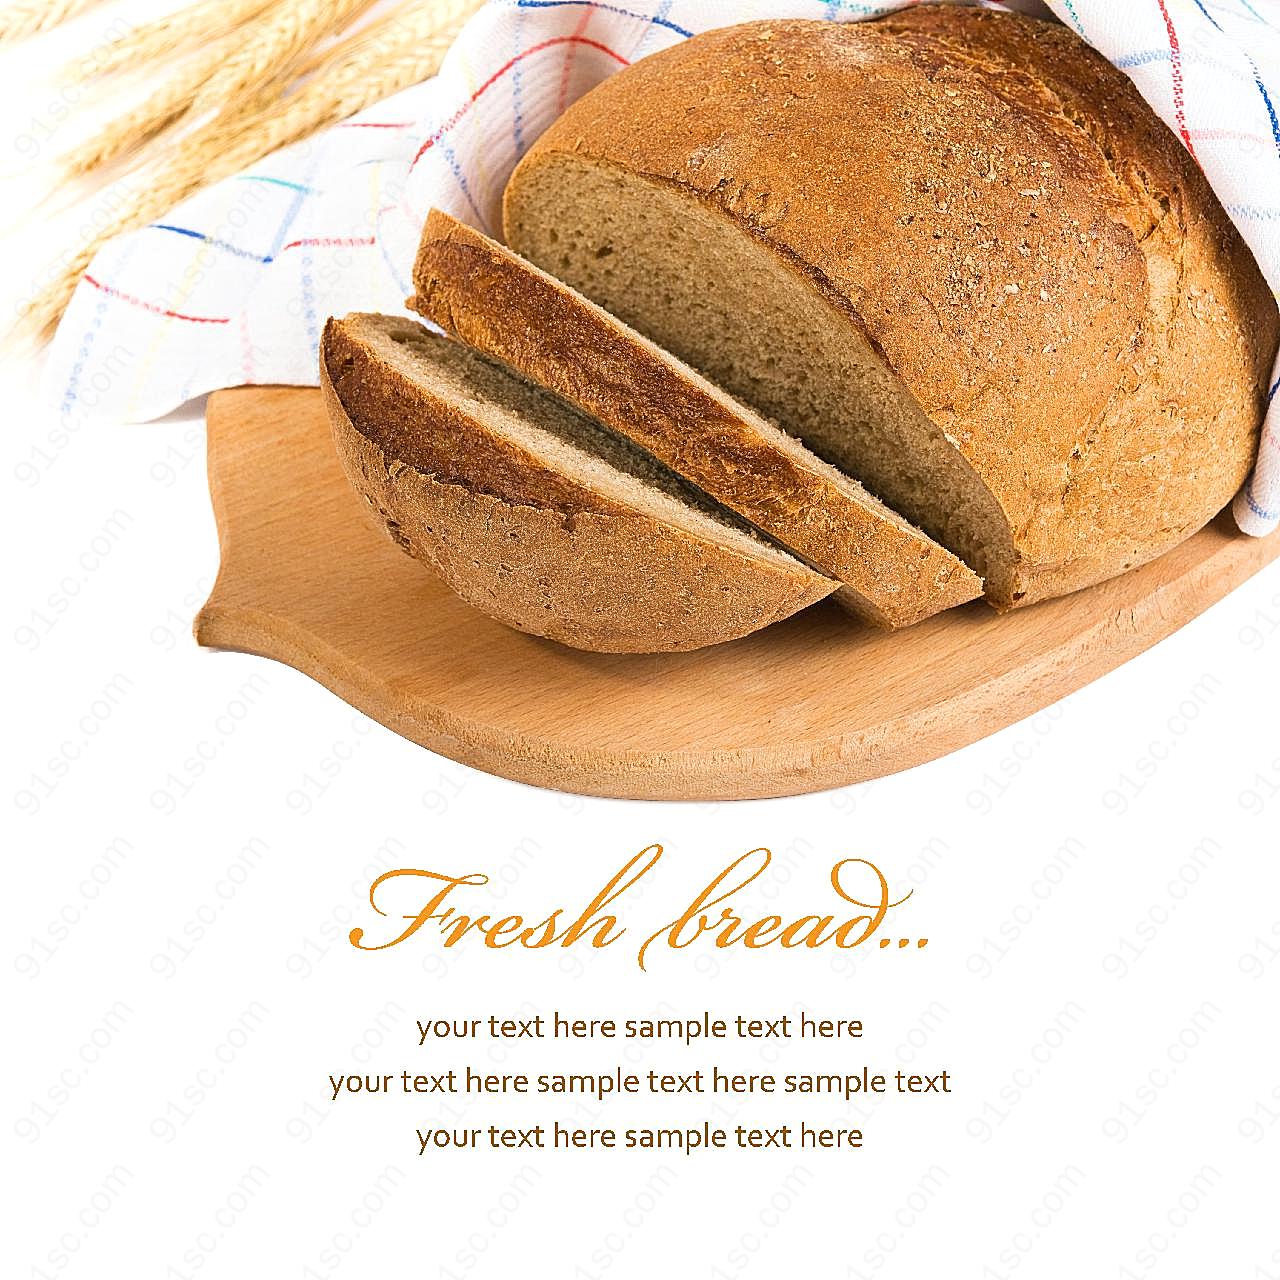 砧板上的全麦面包图片美食